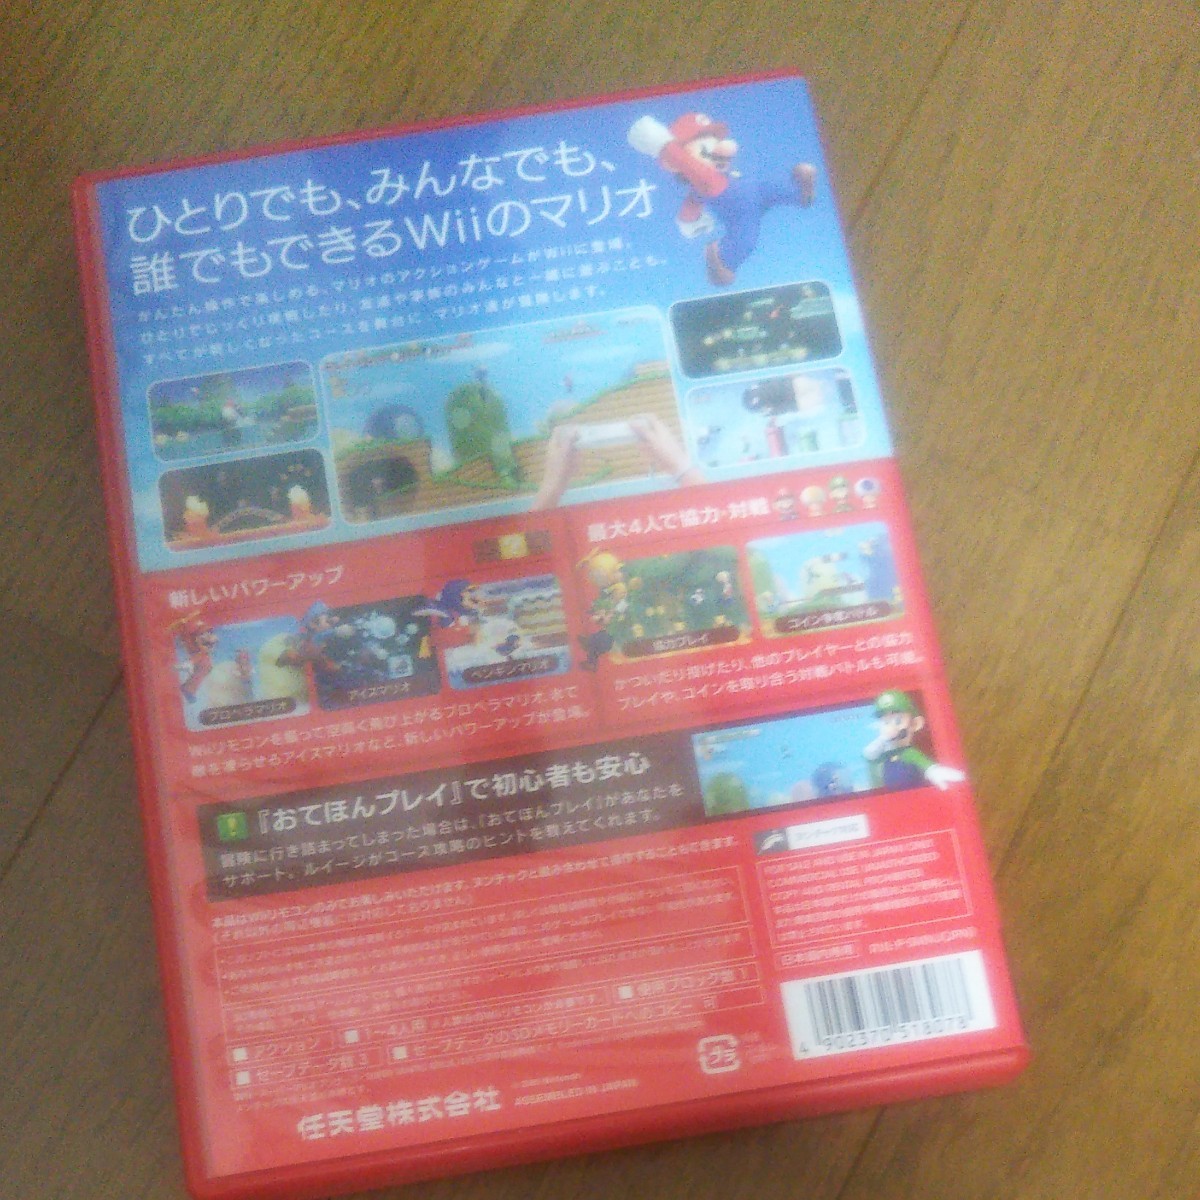 Wii ニュースーパーマリオブラザーズWii